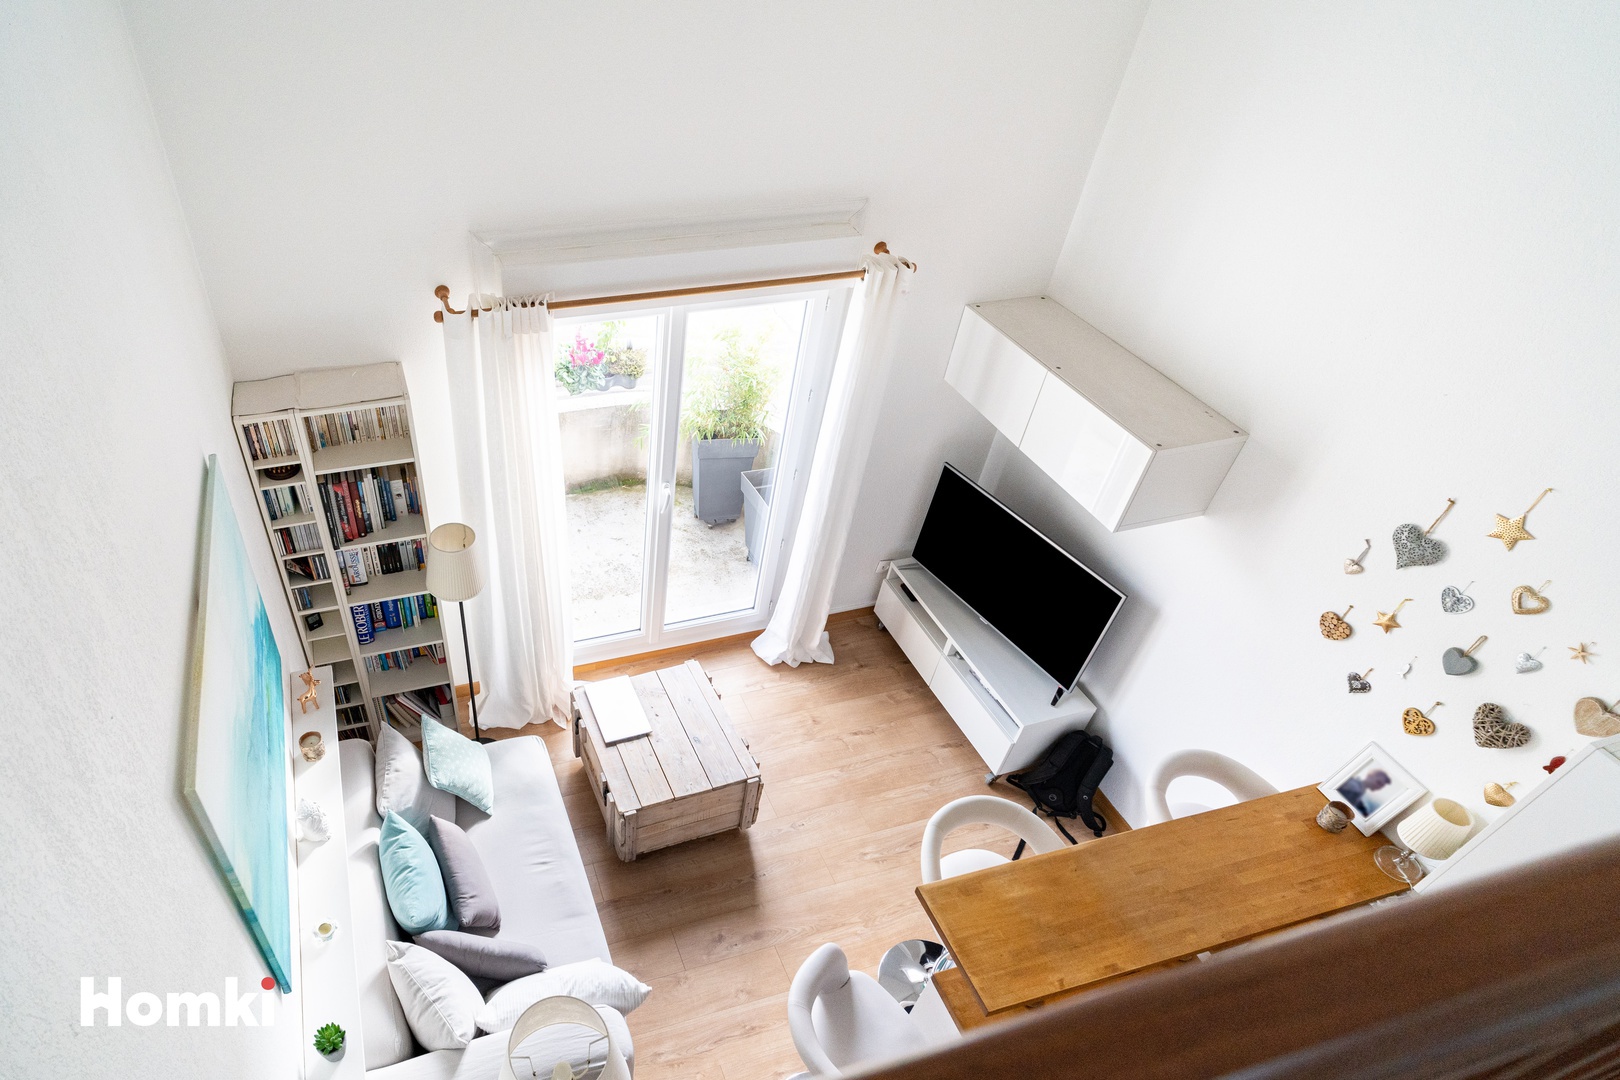 Homki - Vente Appartement  de 35.0 m² à Aix-en-Provence 13090